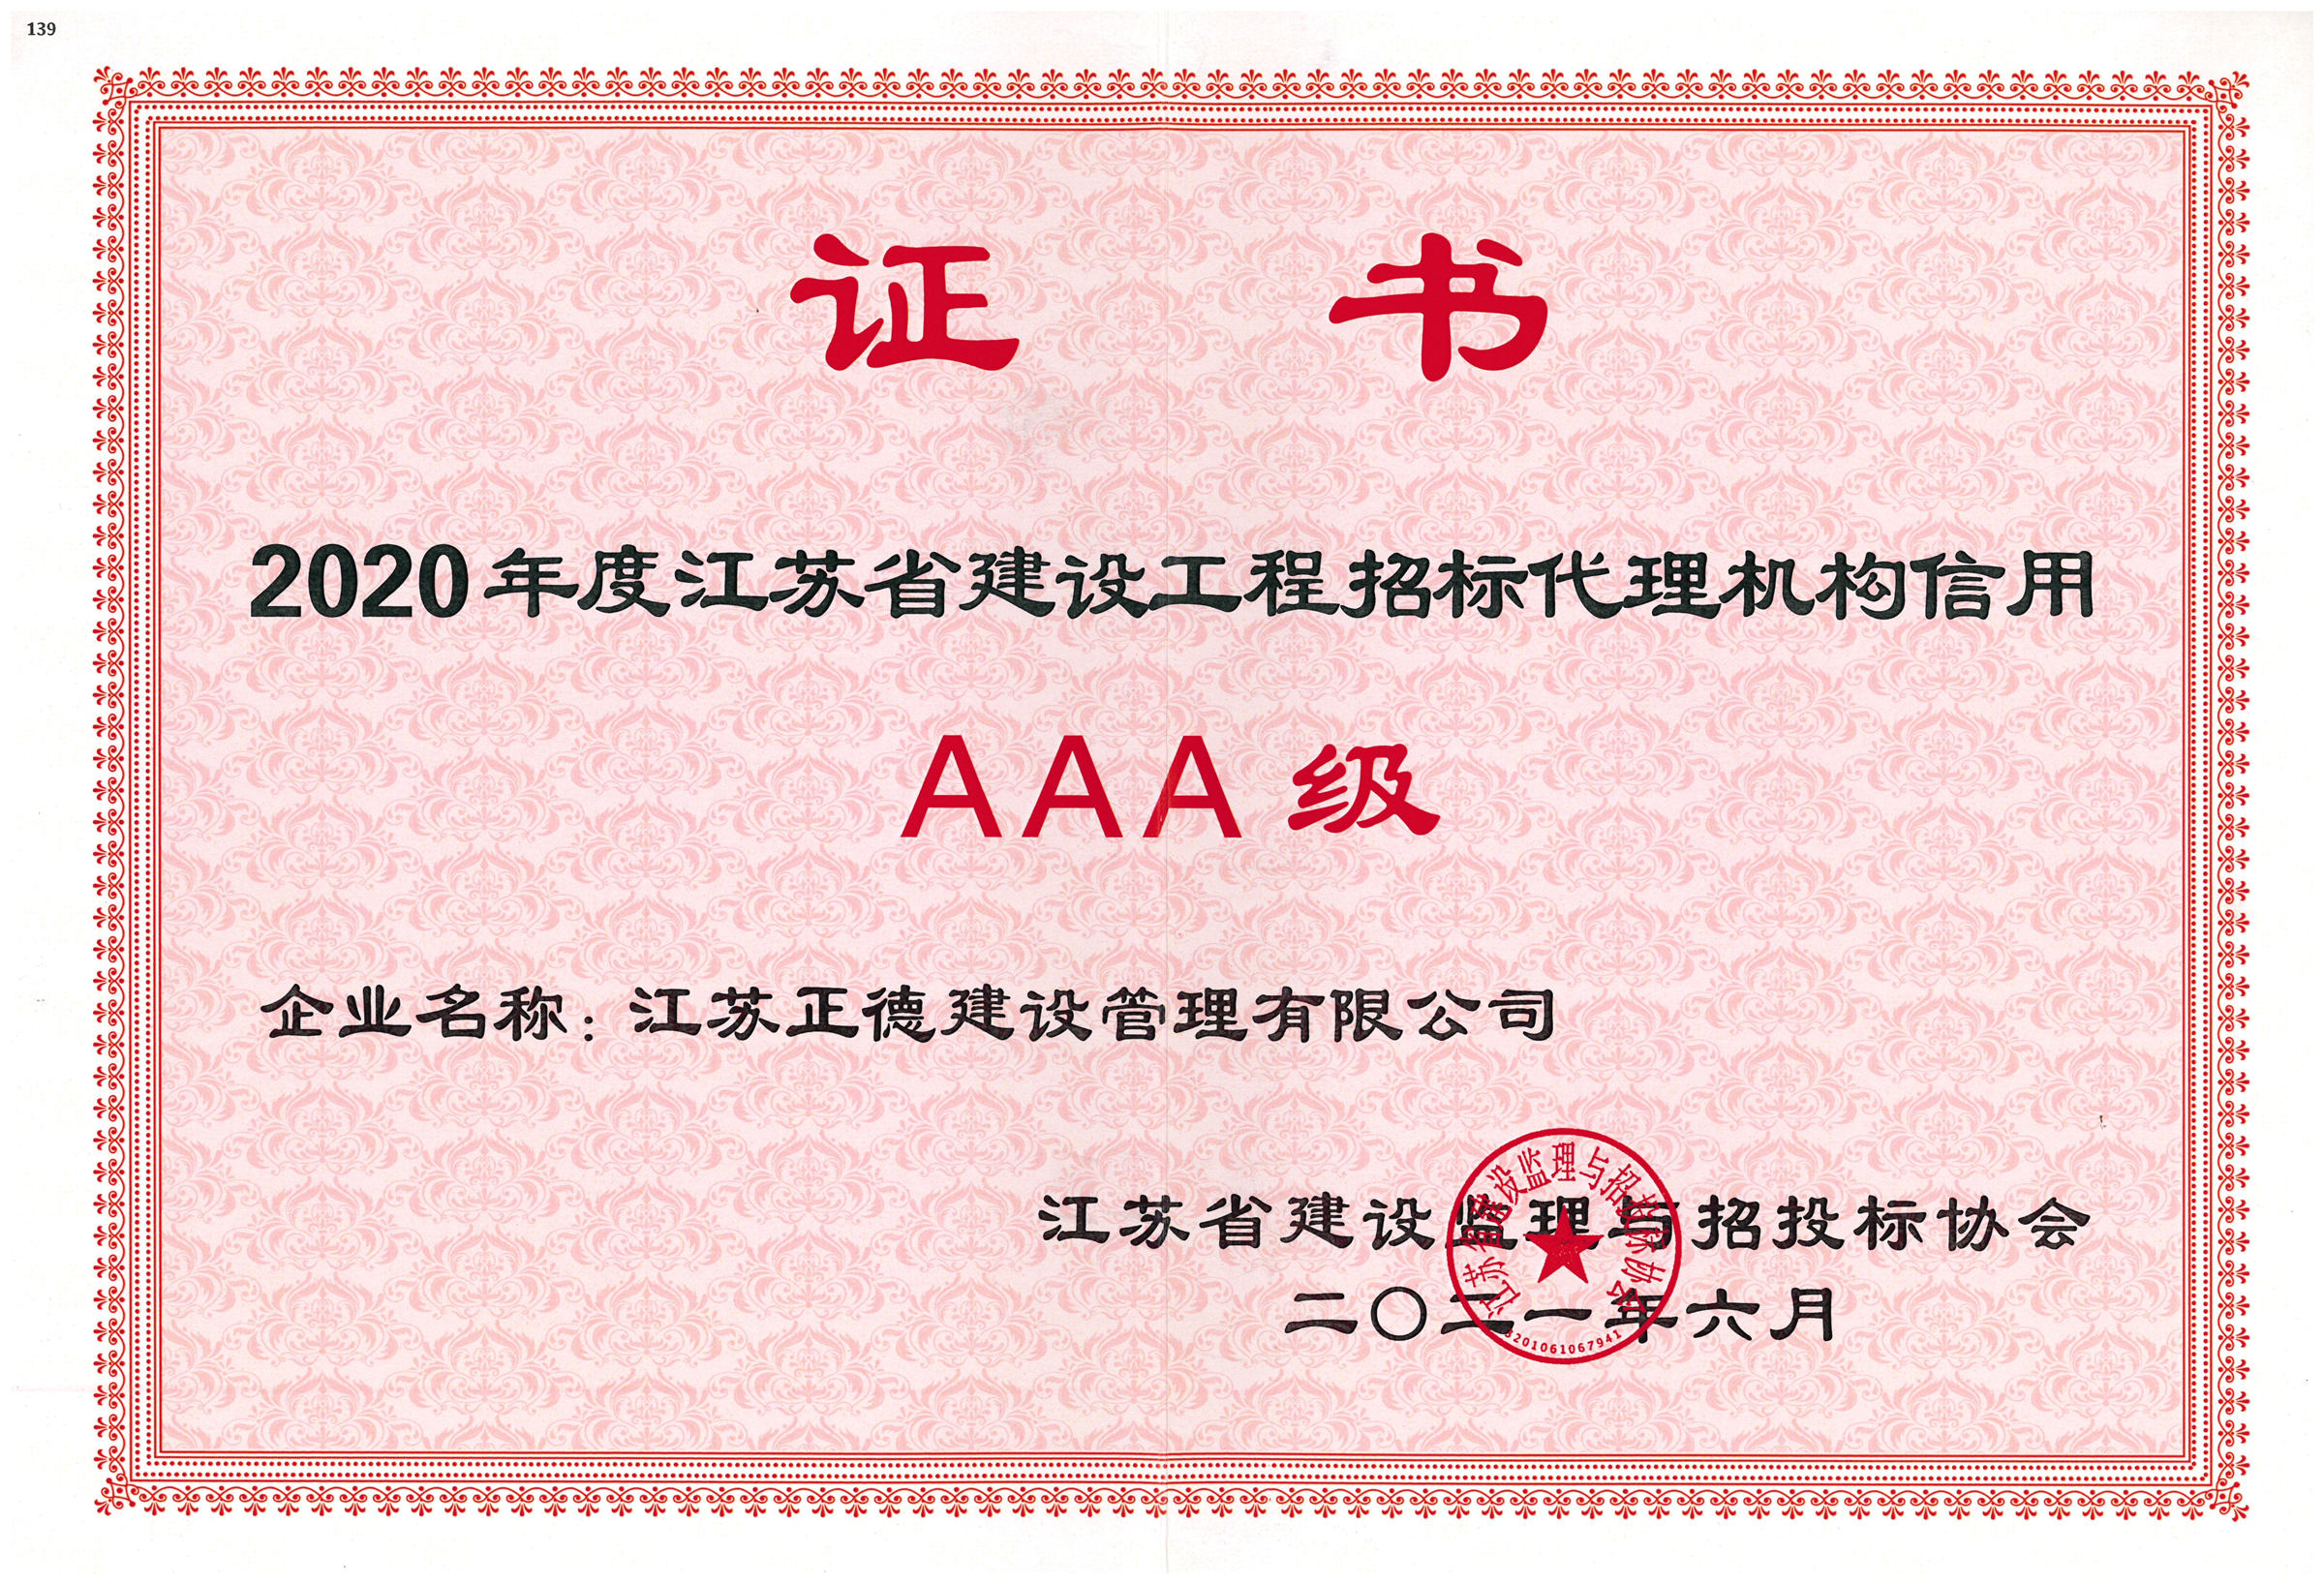 2020年度江苏省建设工程招标代理机构信用AAA级.jpg